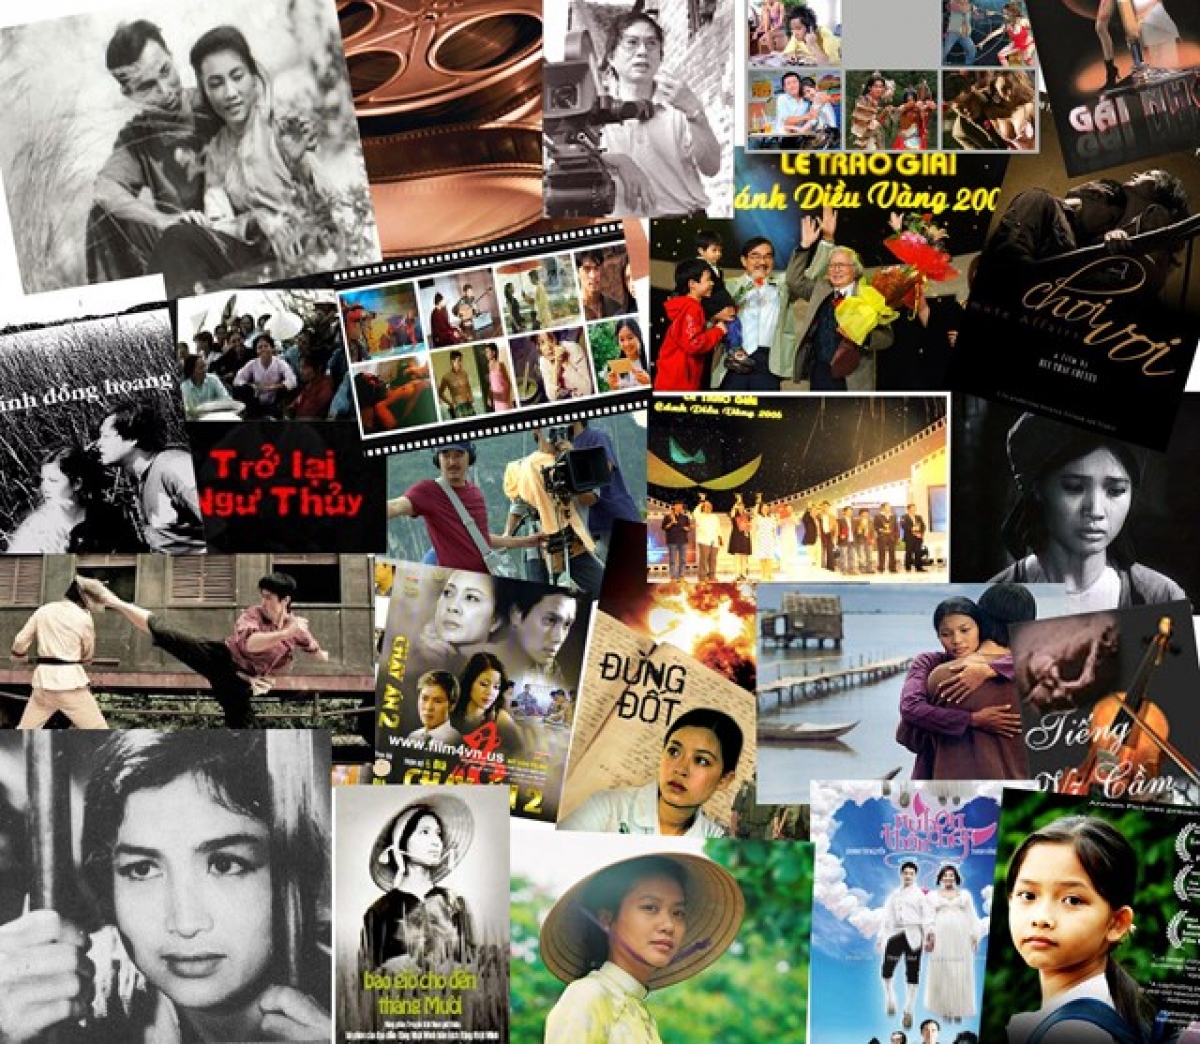 Điện ảnh Việt Nam có lịch sử đáng tự hào nhưng đang đứng trước nhiều thách thức, khó khăn để thực hiện được mục tiêu vừa phát triển một lĩnh vực văn hóa – nghệ thuật nhưng cũng vừa là một ngành kinh tế (công nghiệp điện ảnh).